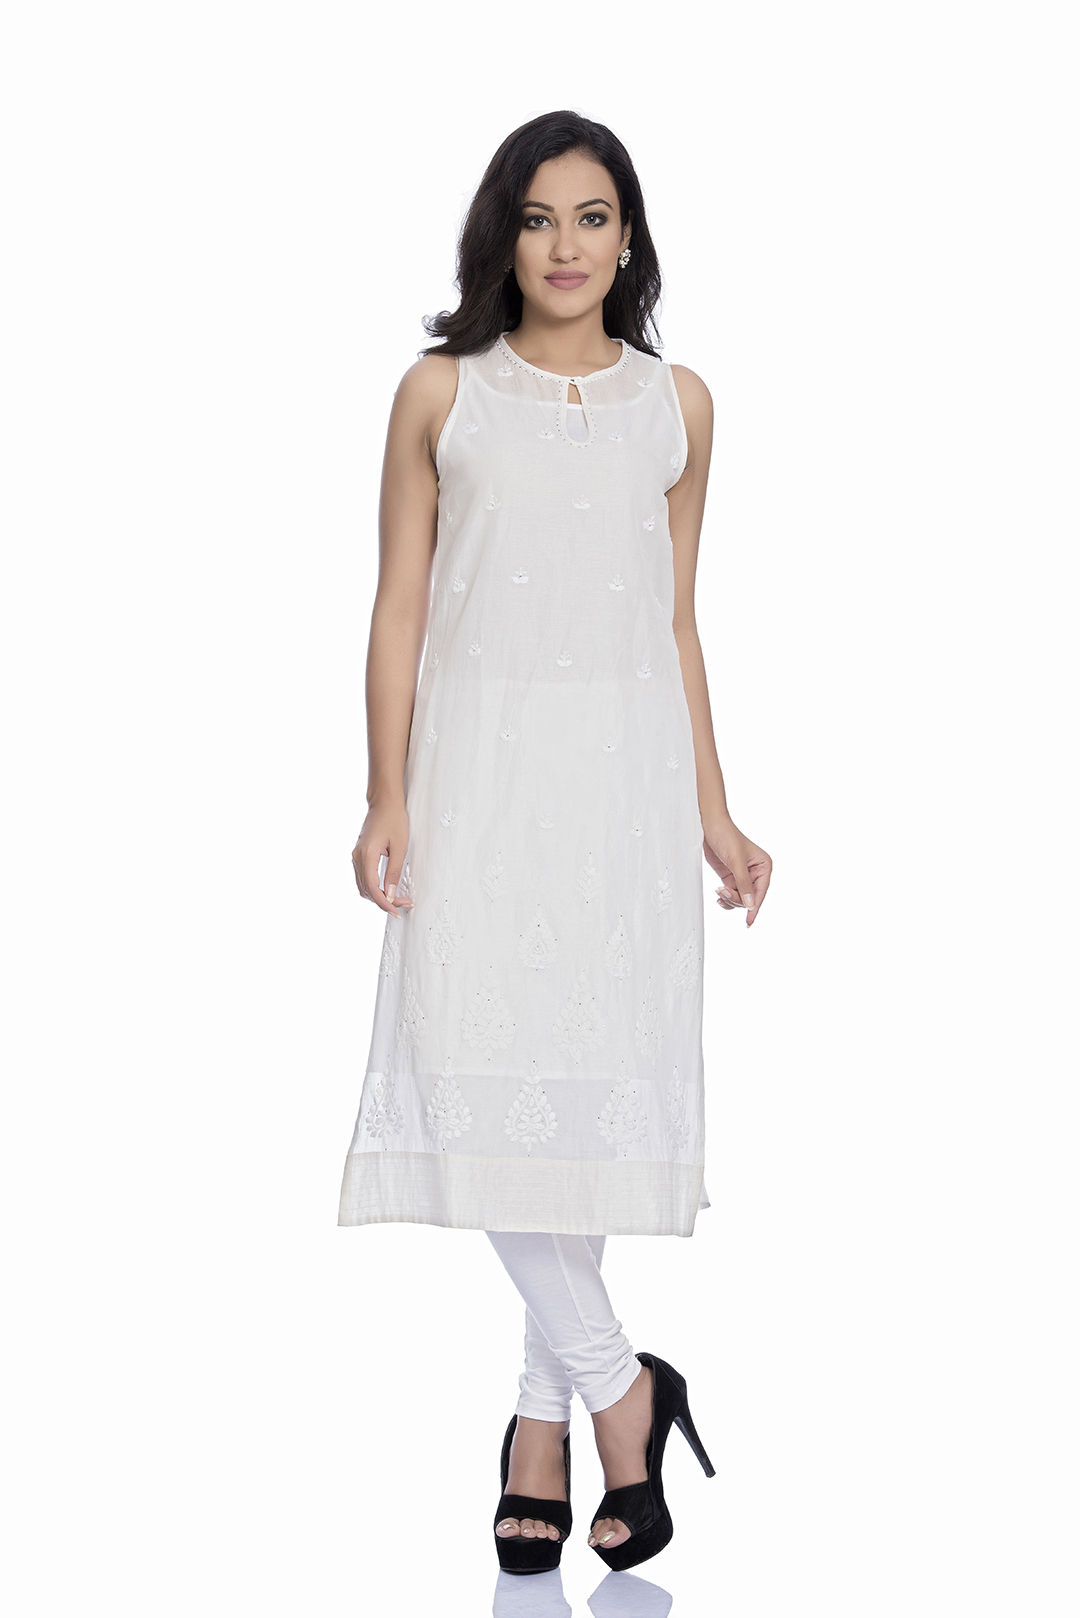 Indian Ladies Kurta,Women's White Cotton Dress Top,Knee Length Chikankari  Kurti | eBay